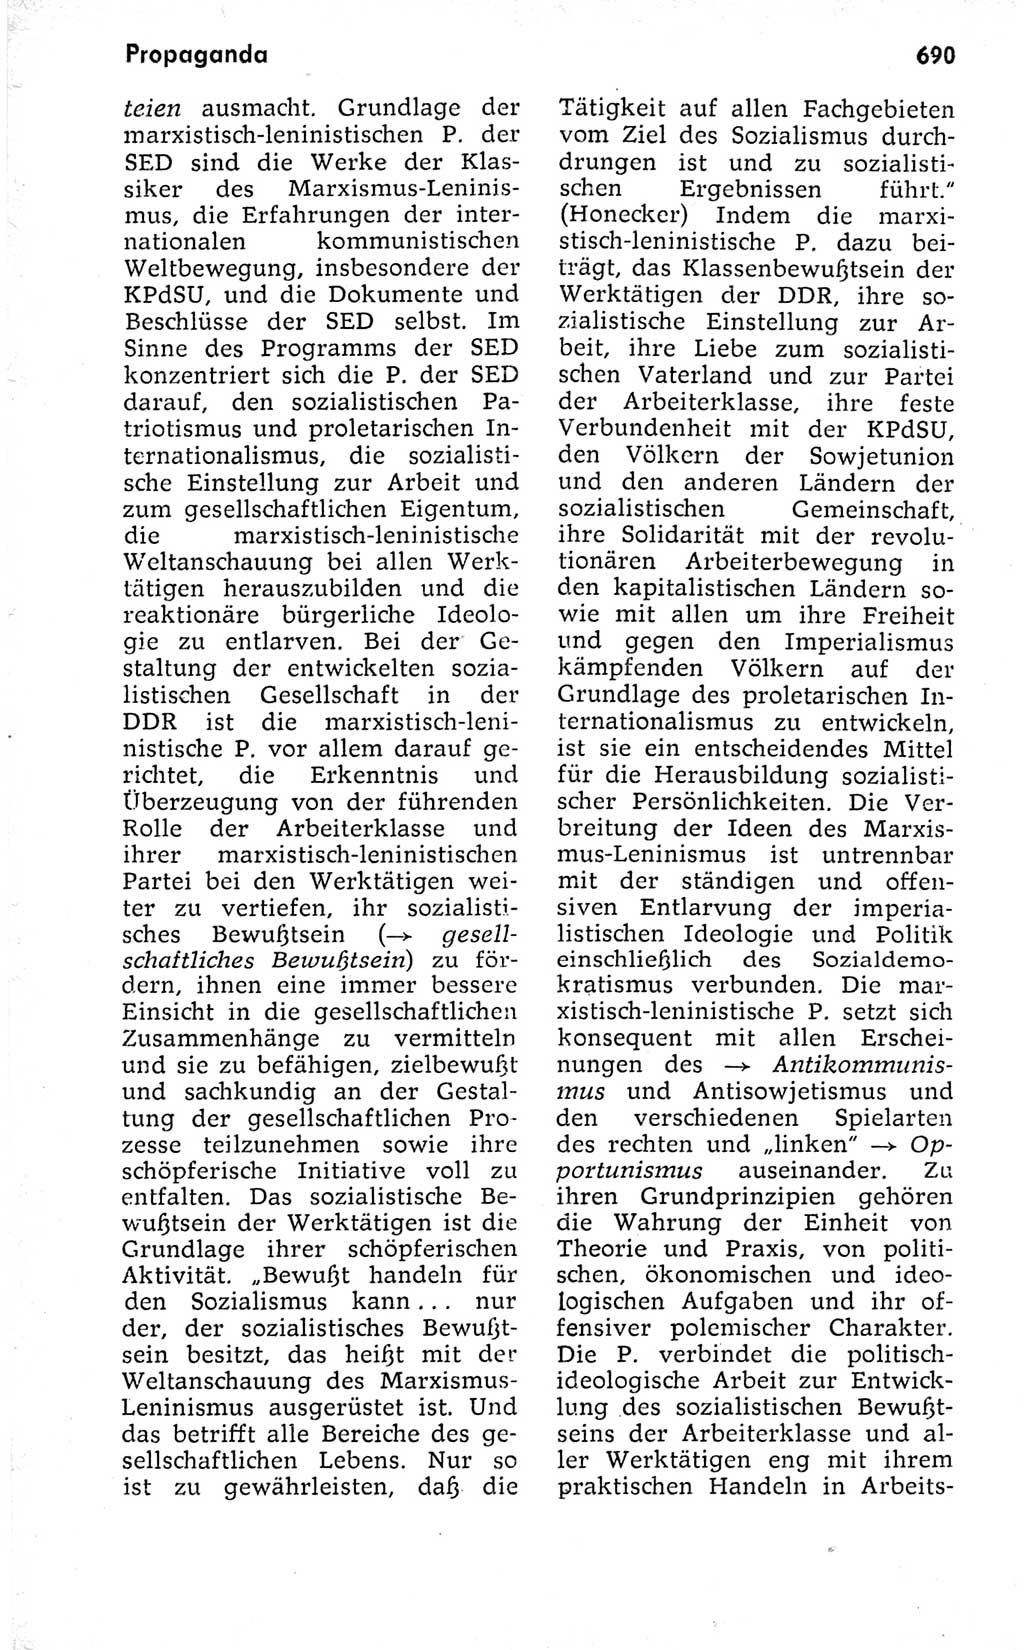 Kleines politisches Wörterbuch [Deutsche Demokratische Republik (DDR)] 1973, Seite 690 (Kl. pol. Wb. DDR 1973, S. 690)